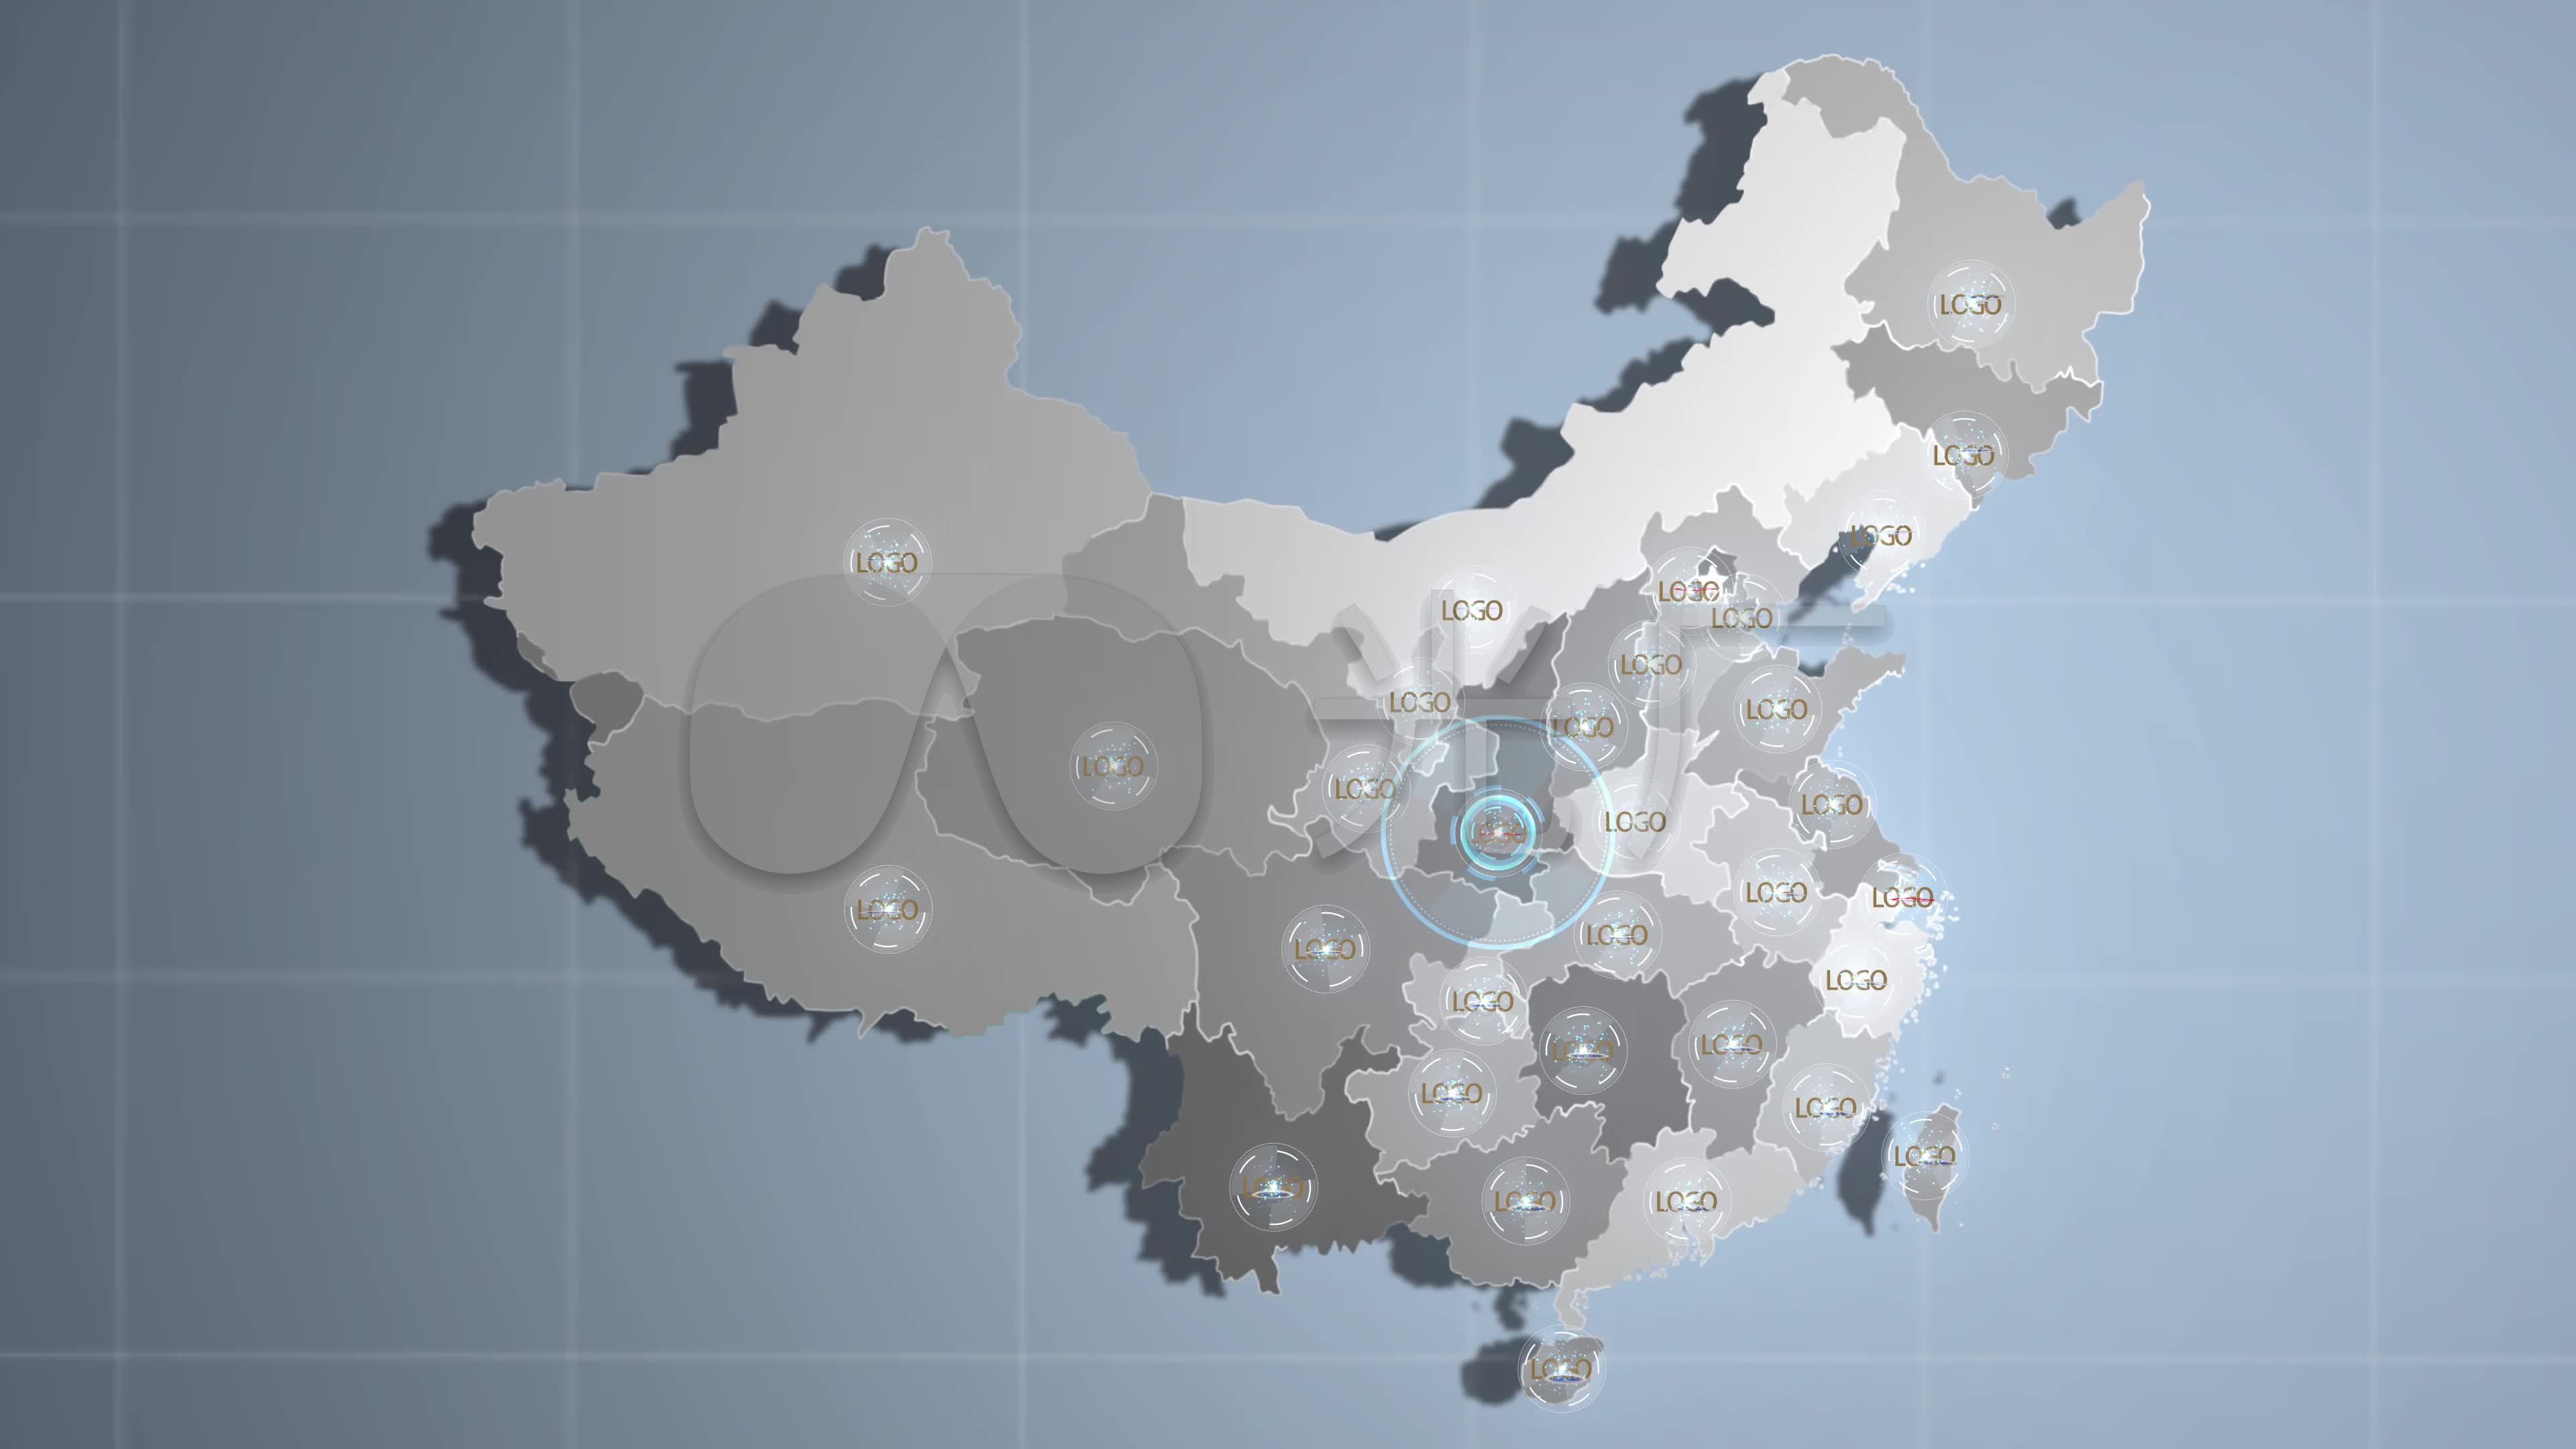 求中国地图包含省份和主要城市_百度知道